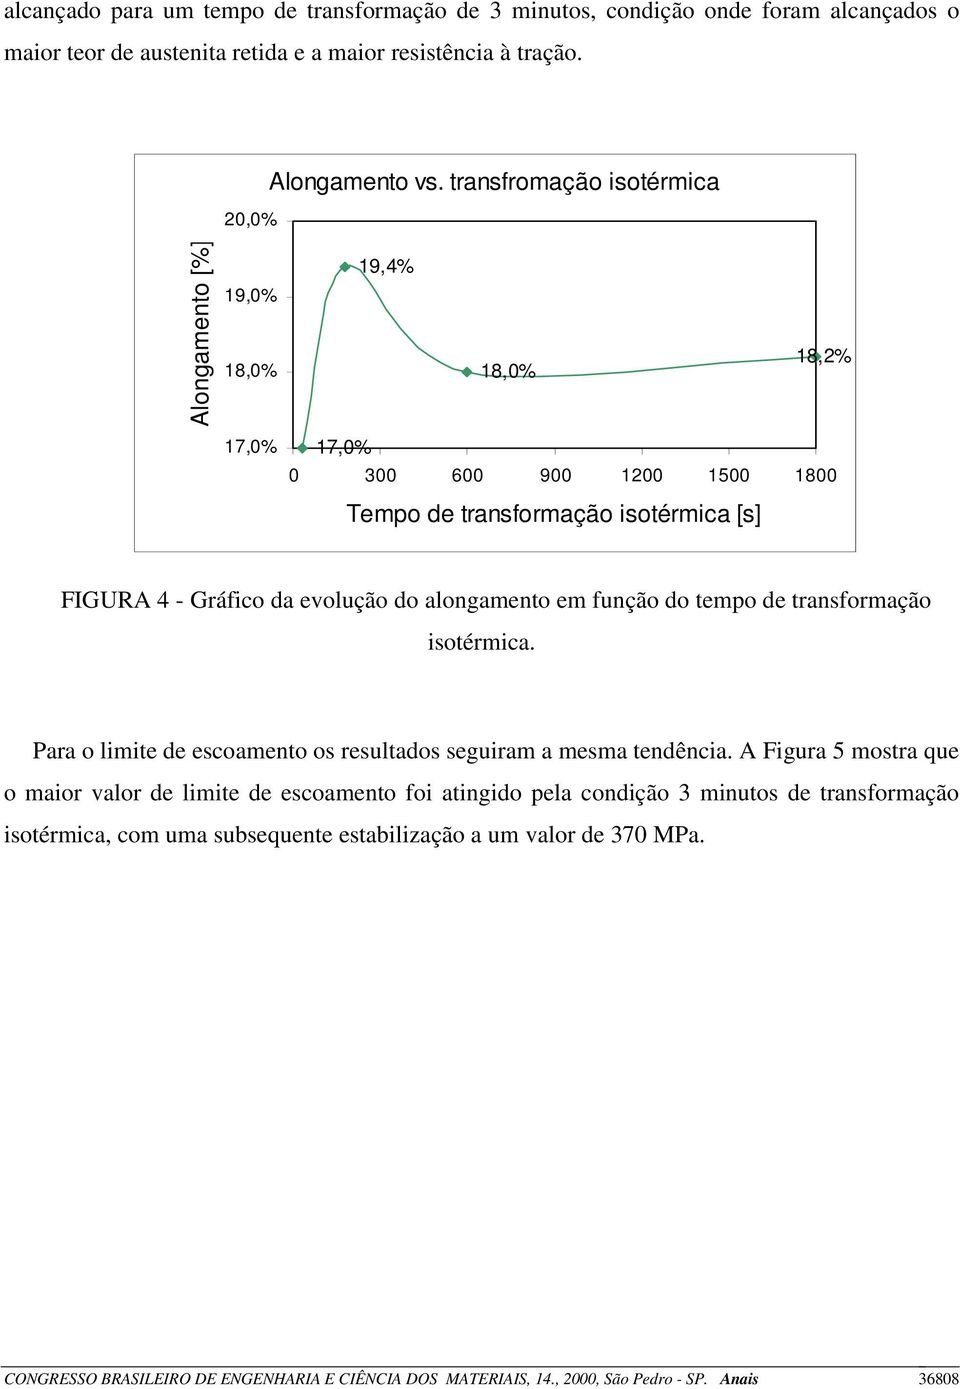 alongamento em função do tempo de transformação isotérmica. Para o limite de escoamento os resultados seguiram a mesma tendência.